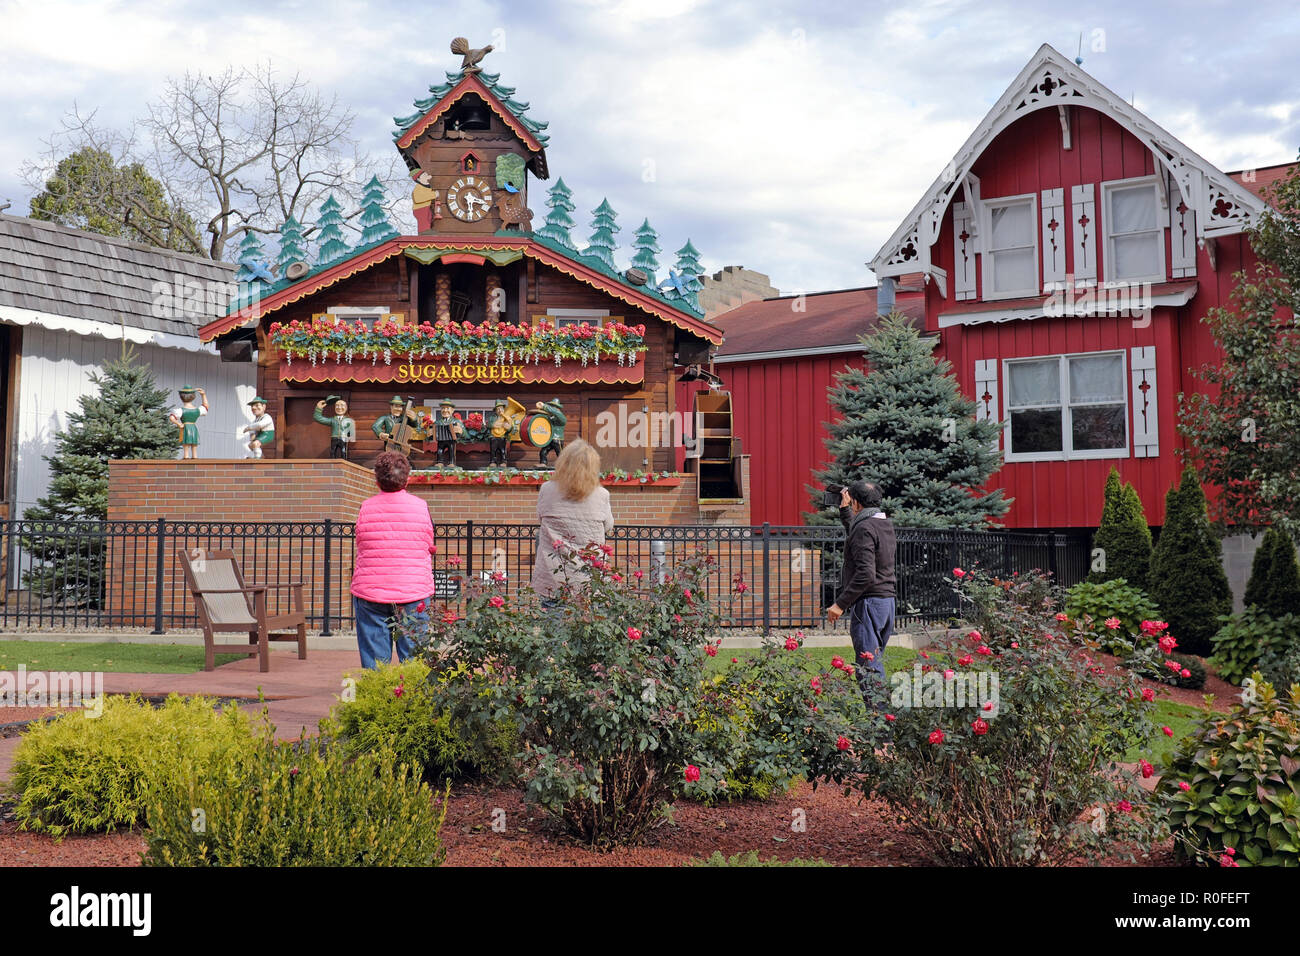 Die Besucher der weltweit größte Kuckucksuhr in Sugarcreek, Ohio, USA Fotos als die Fünf-stück Roboter oompa Band führt. Stockfoto